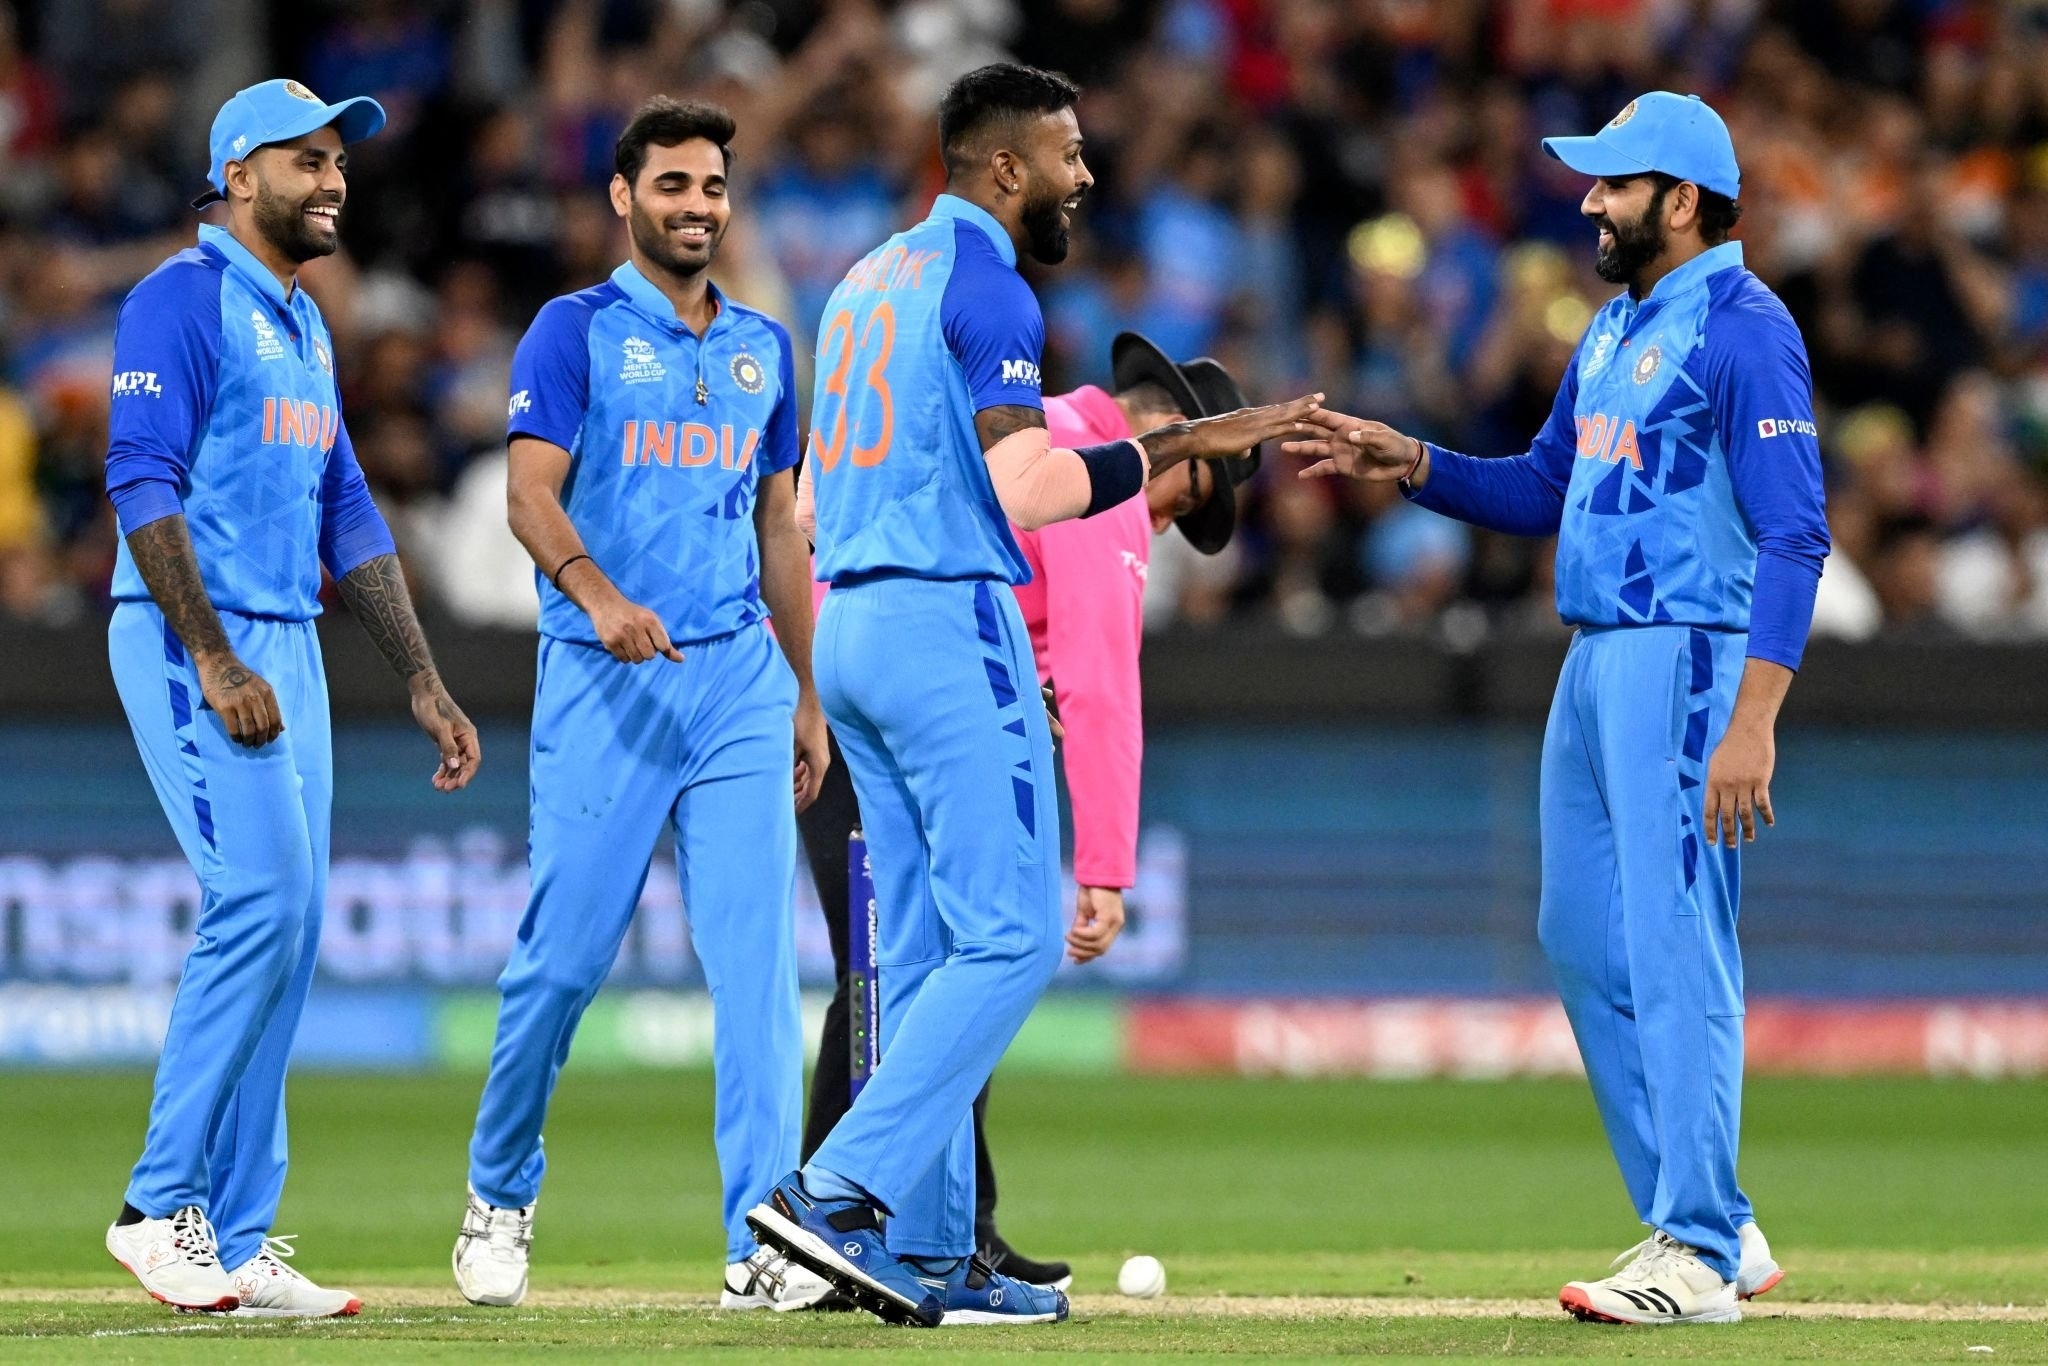 Keluar dari WC T20 India: Stephen Fleming mendesak BCCI, Rahul Dravid untuk mempertimbangkan kembali pengasingan liga asing